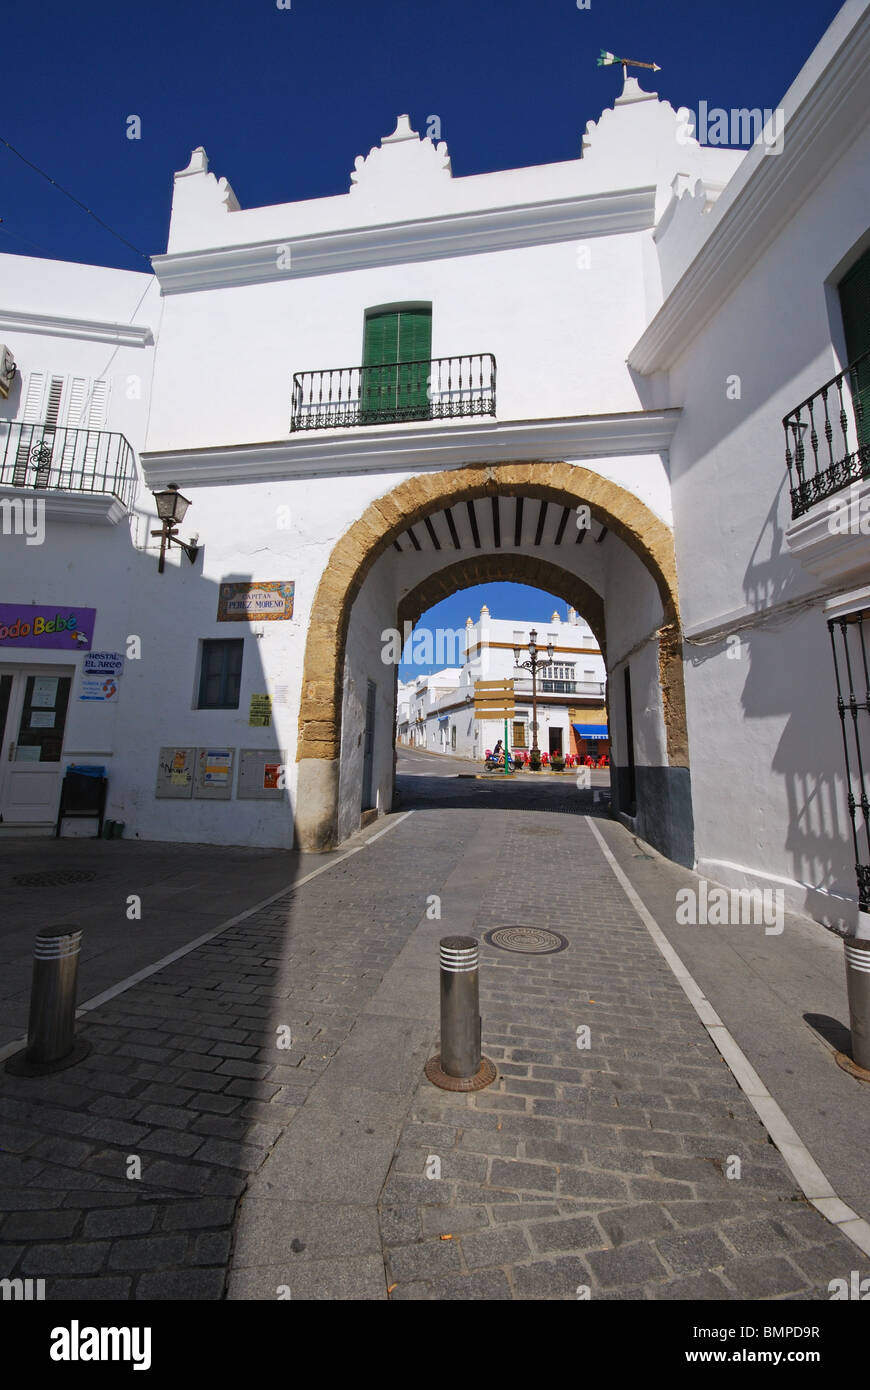 Beach and White Town, Conil De La Frontera. Editorial Stock Photo - Image  of building, blue: 63334888